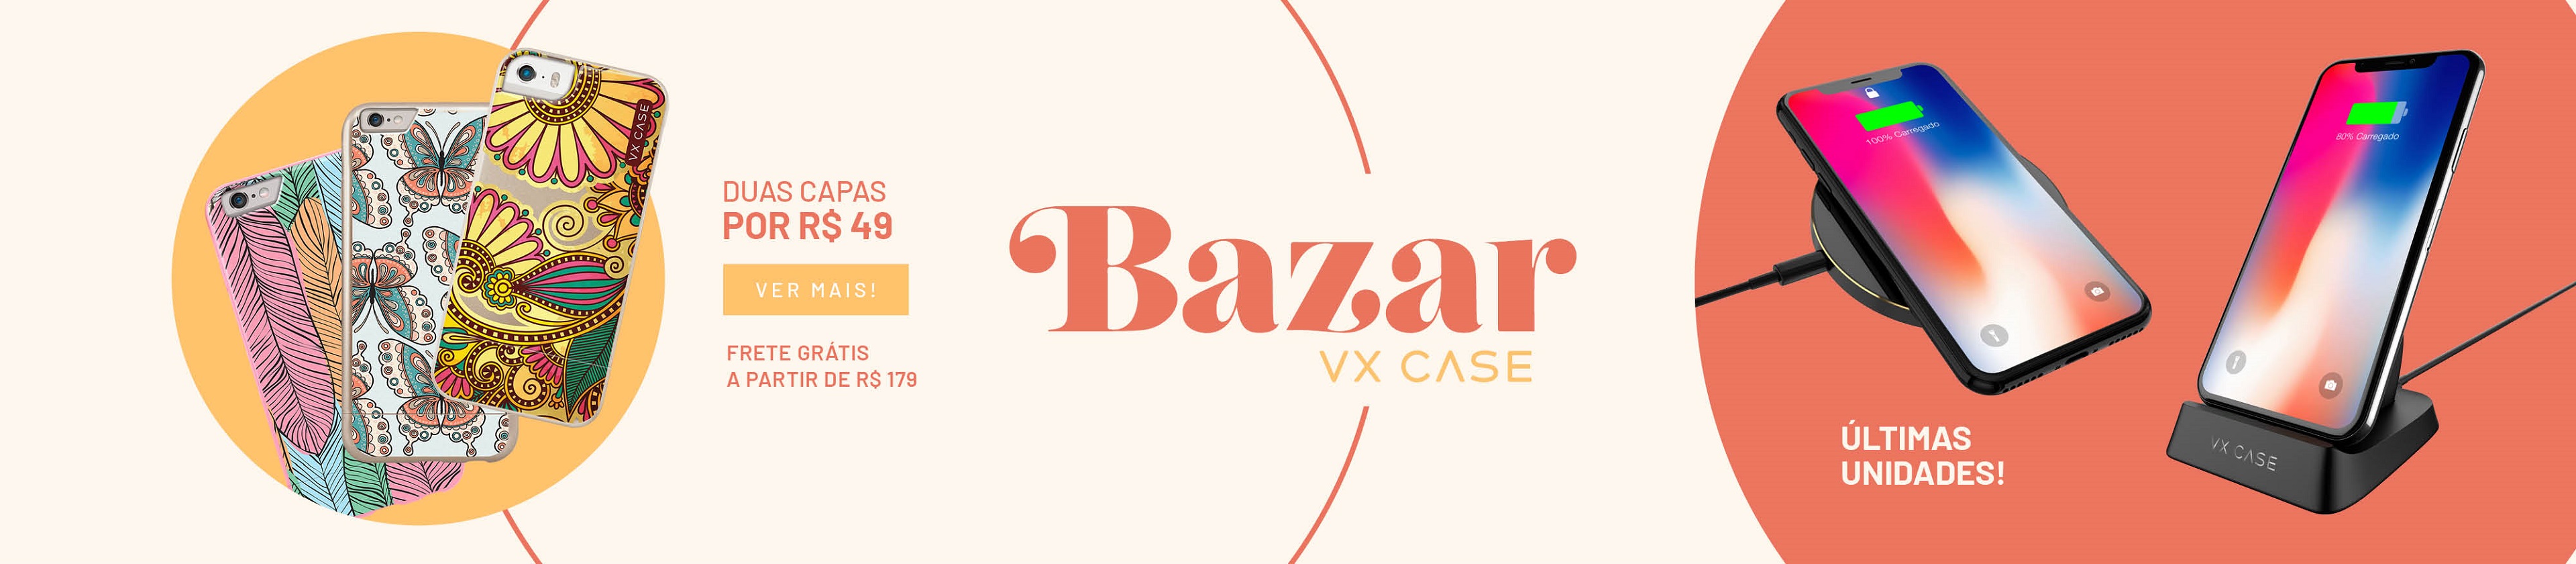 Bazar VX Case - Variedade de capinhas e acessórios. Duas capas por apenas R$49 Escolha a capa estampada que mais combina com o seu estilo. Aproveite também o Frete Grátis em pedidos a partir de R$ 179